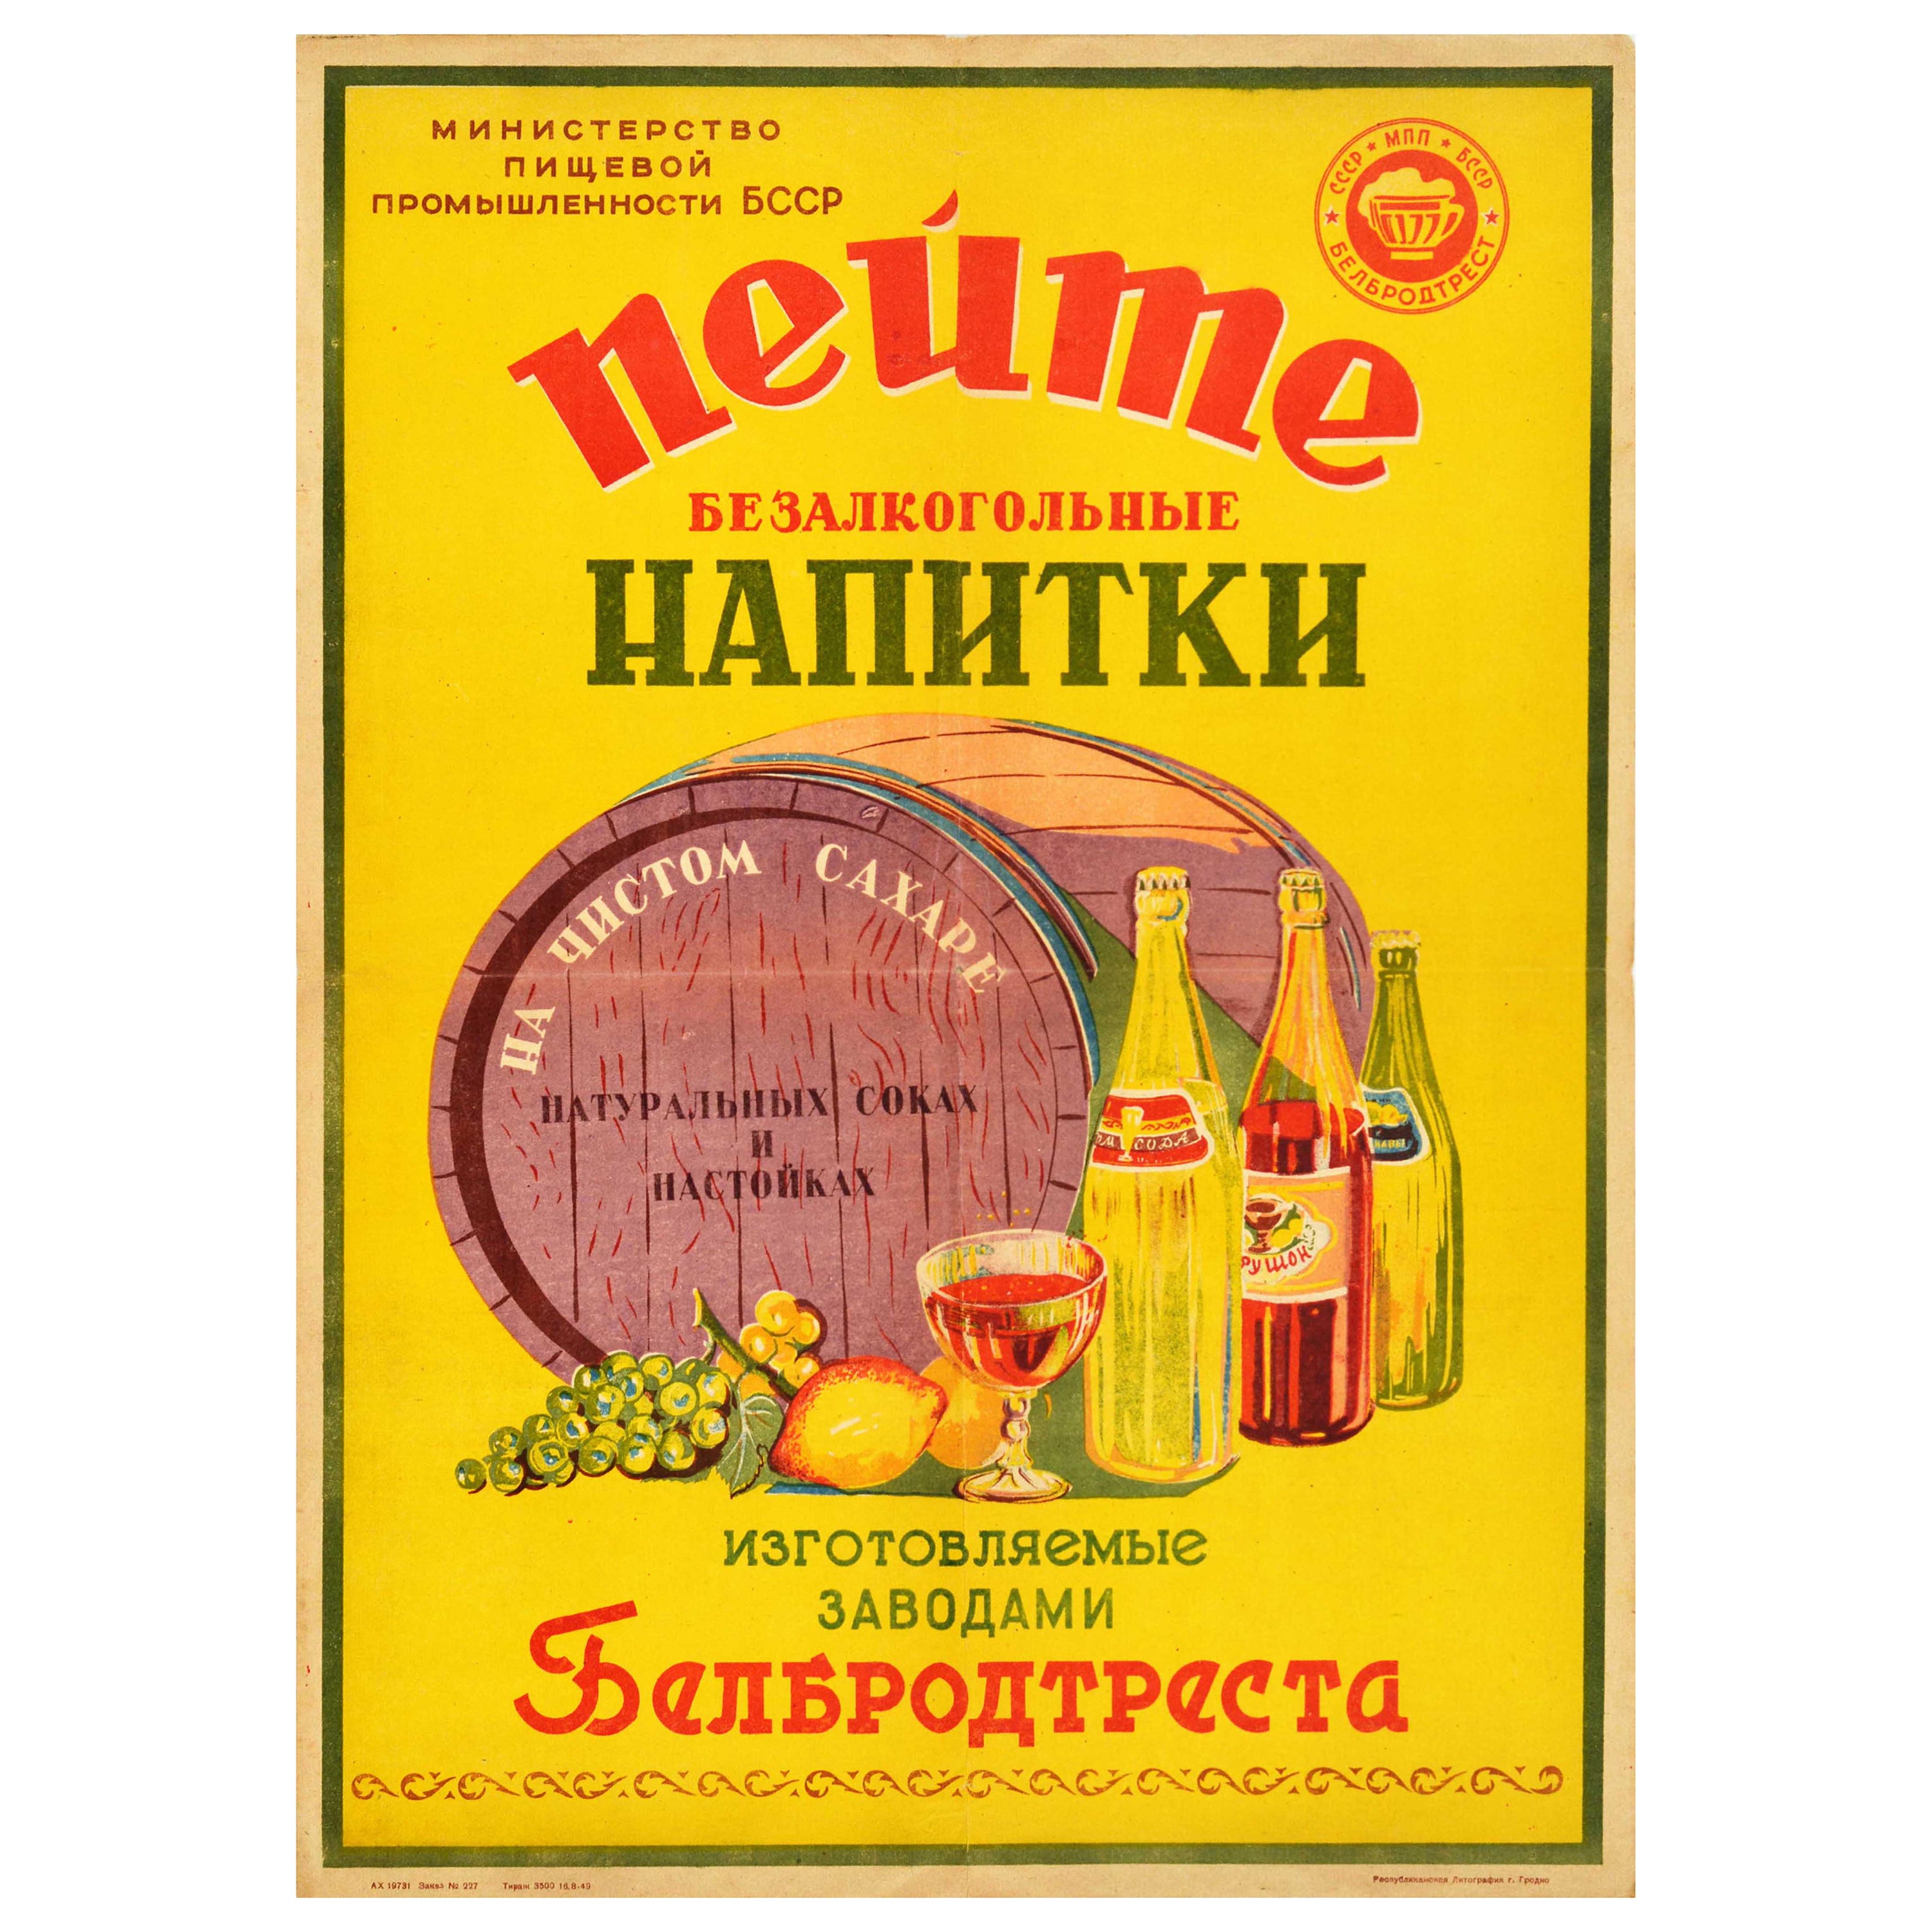 Affiche rétro originale pour les boissons, non alcoholiques, boissons douces et glaces, URSS, Industry alimentaire